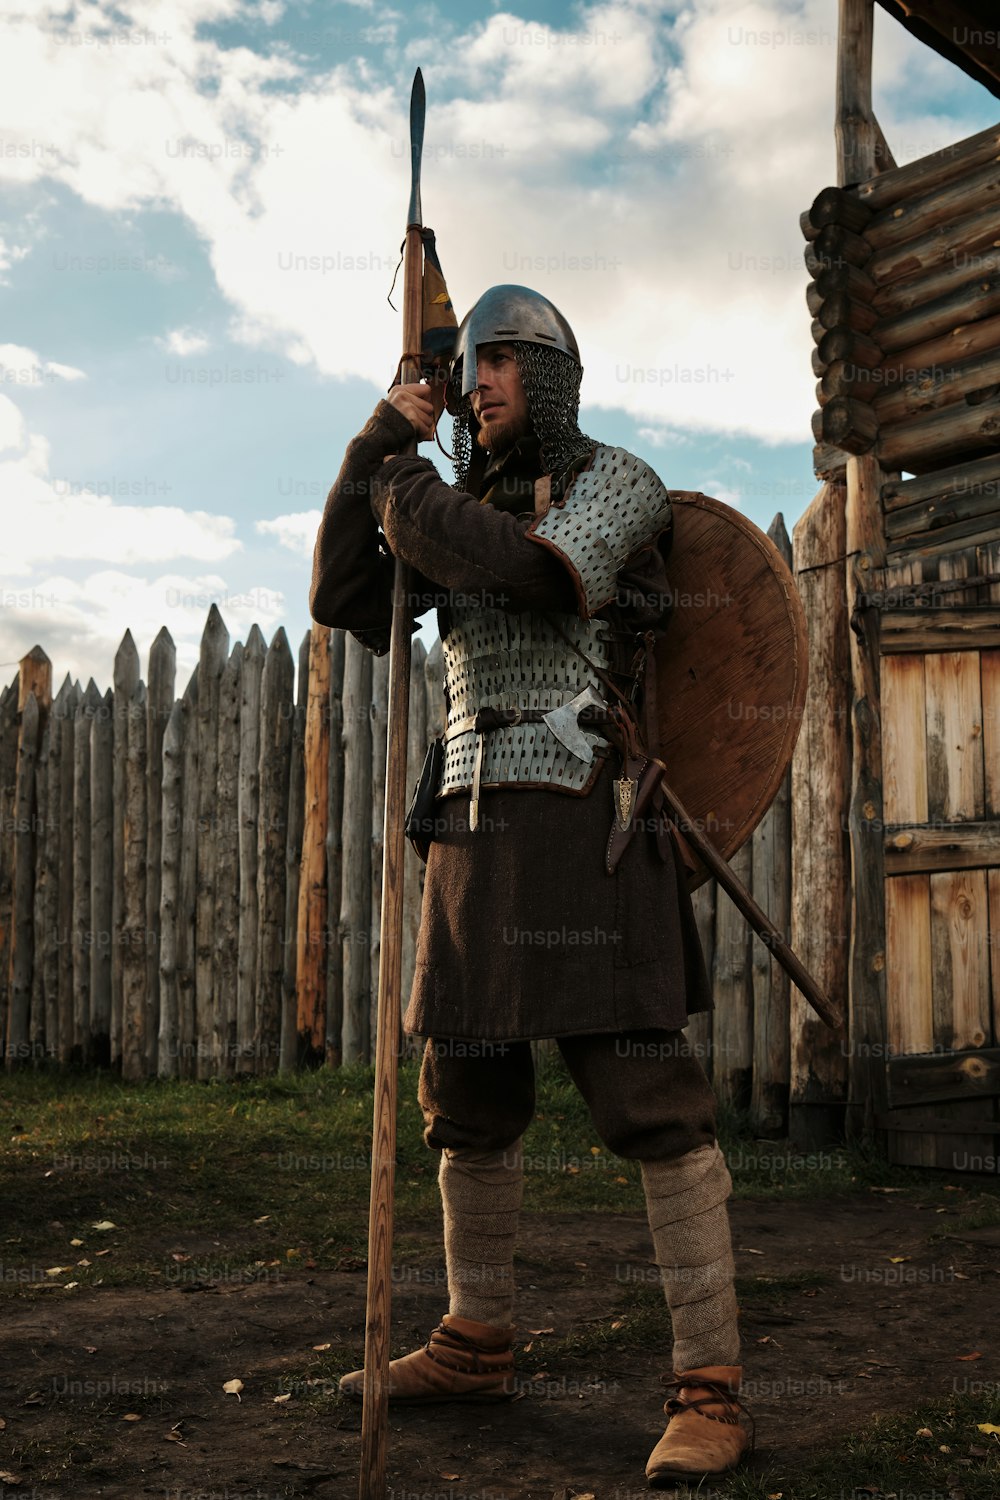 Ein Mann in mittelalterlicher Kleidung, der ein Schwert und einen Schild hält